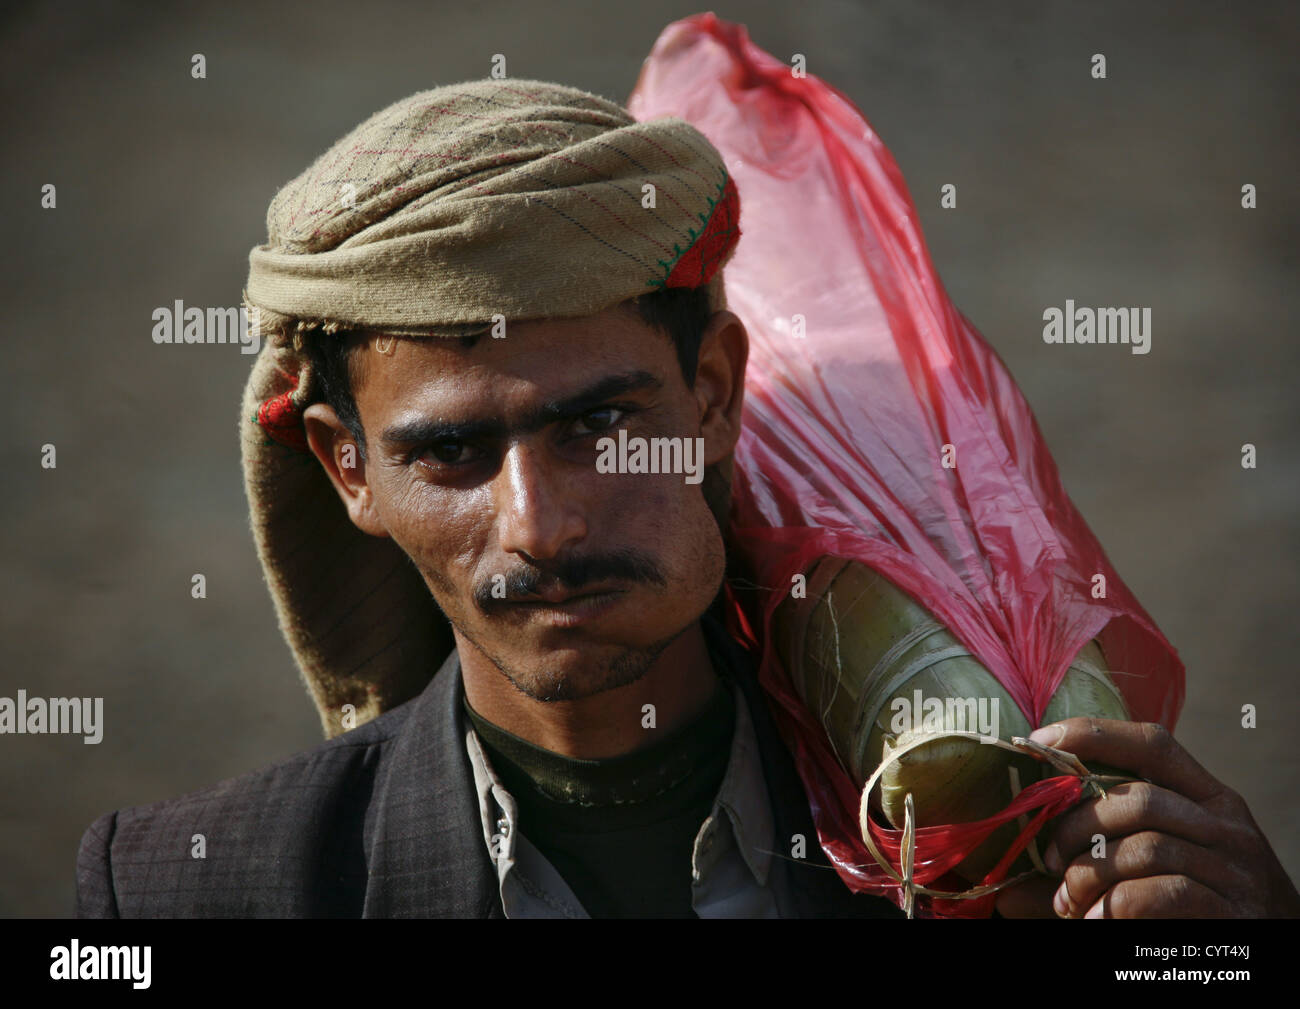 Shahara Man Chewing Kat And Carrying A Bag On His Shoulder, Shahara, Yemen Stock Photo